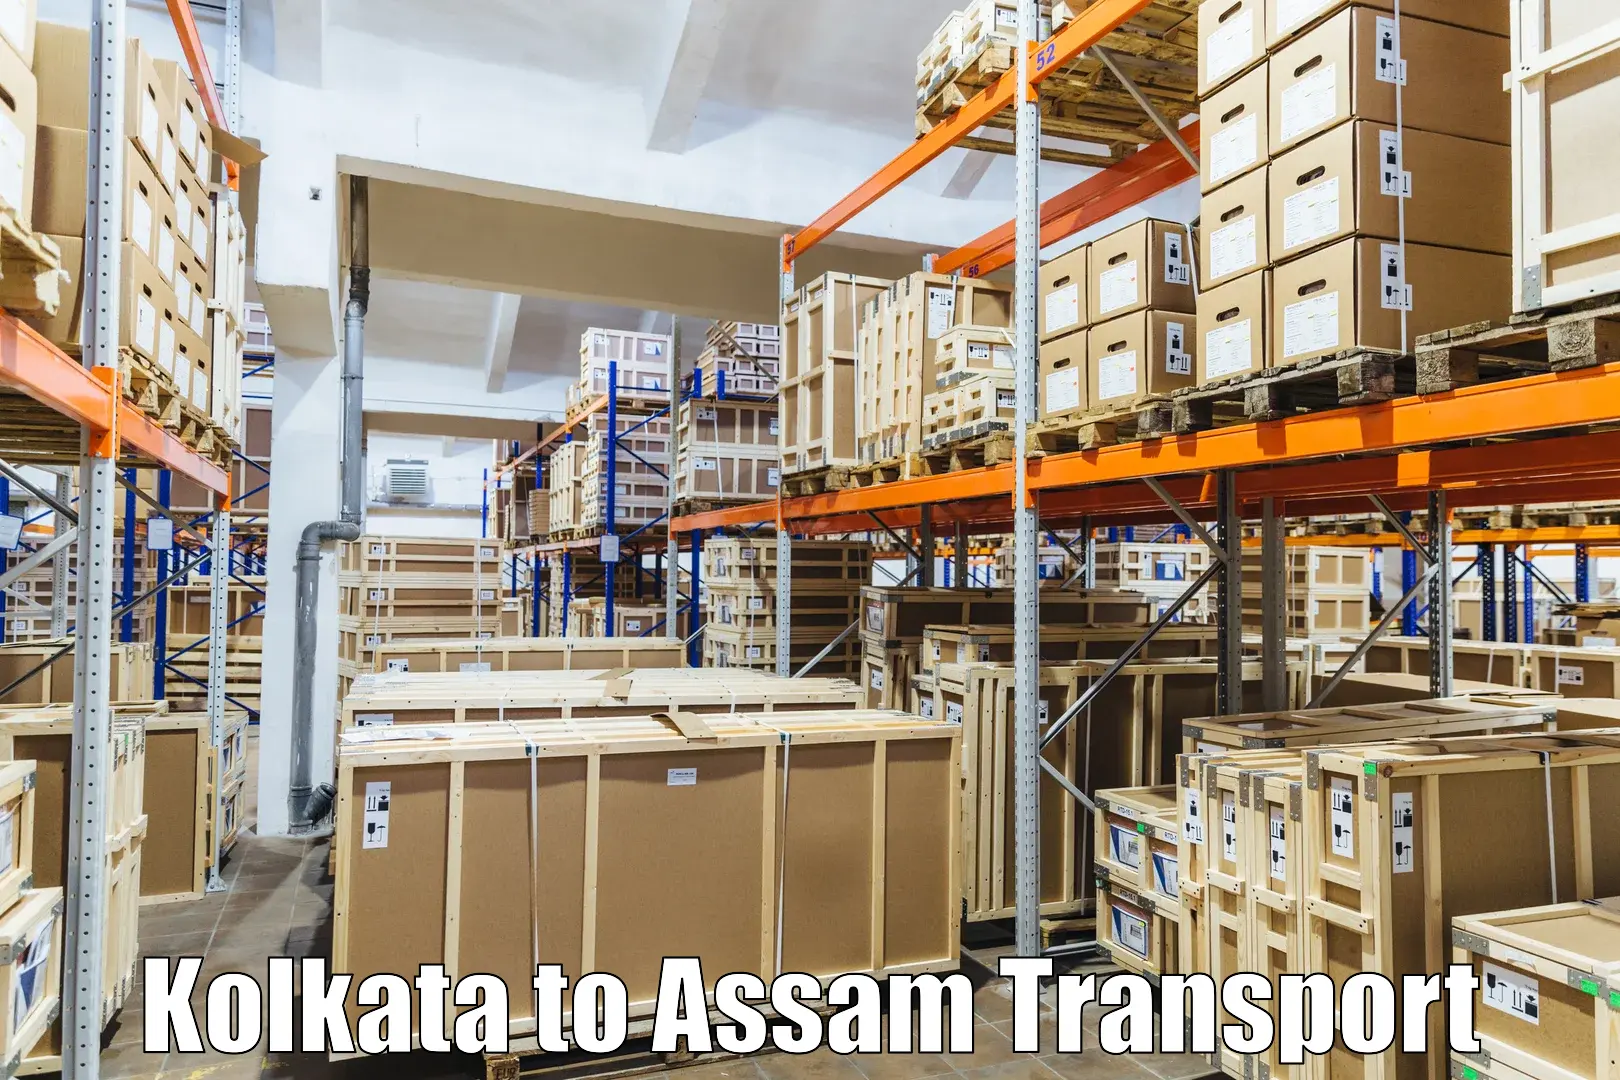 Online transport booking Kolkata to Kampur